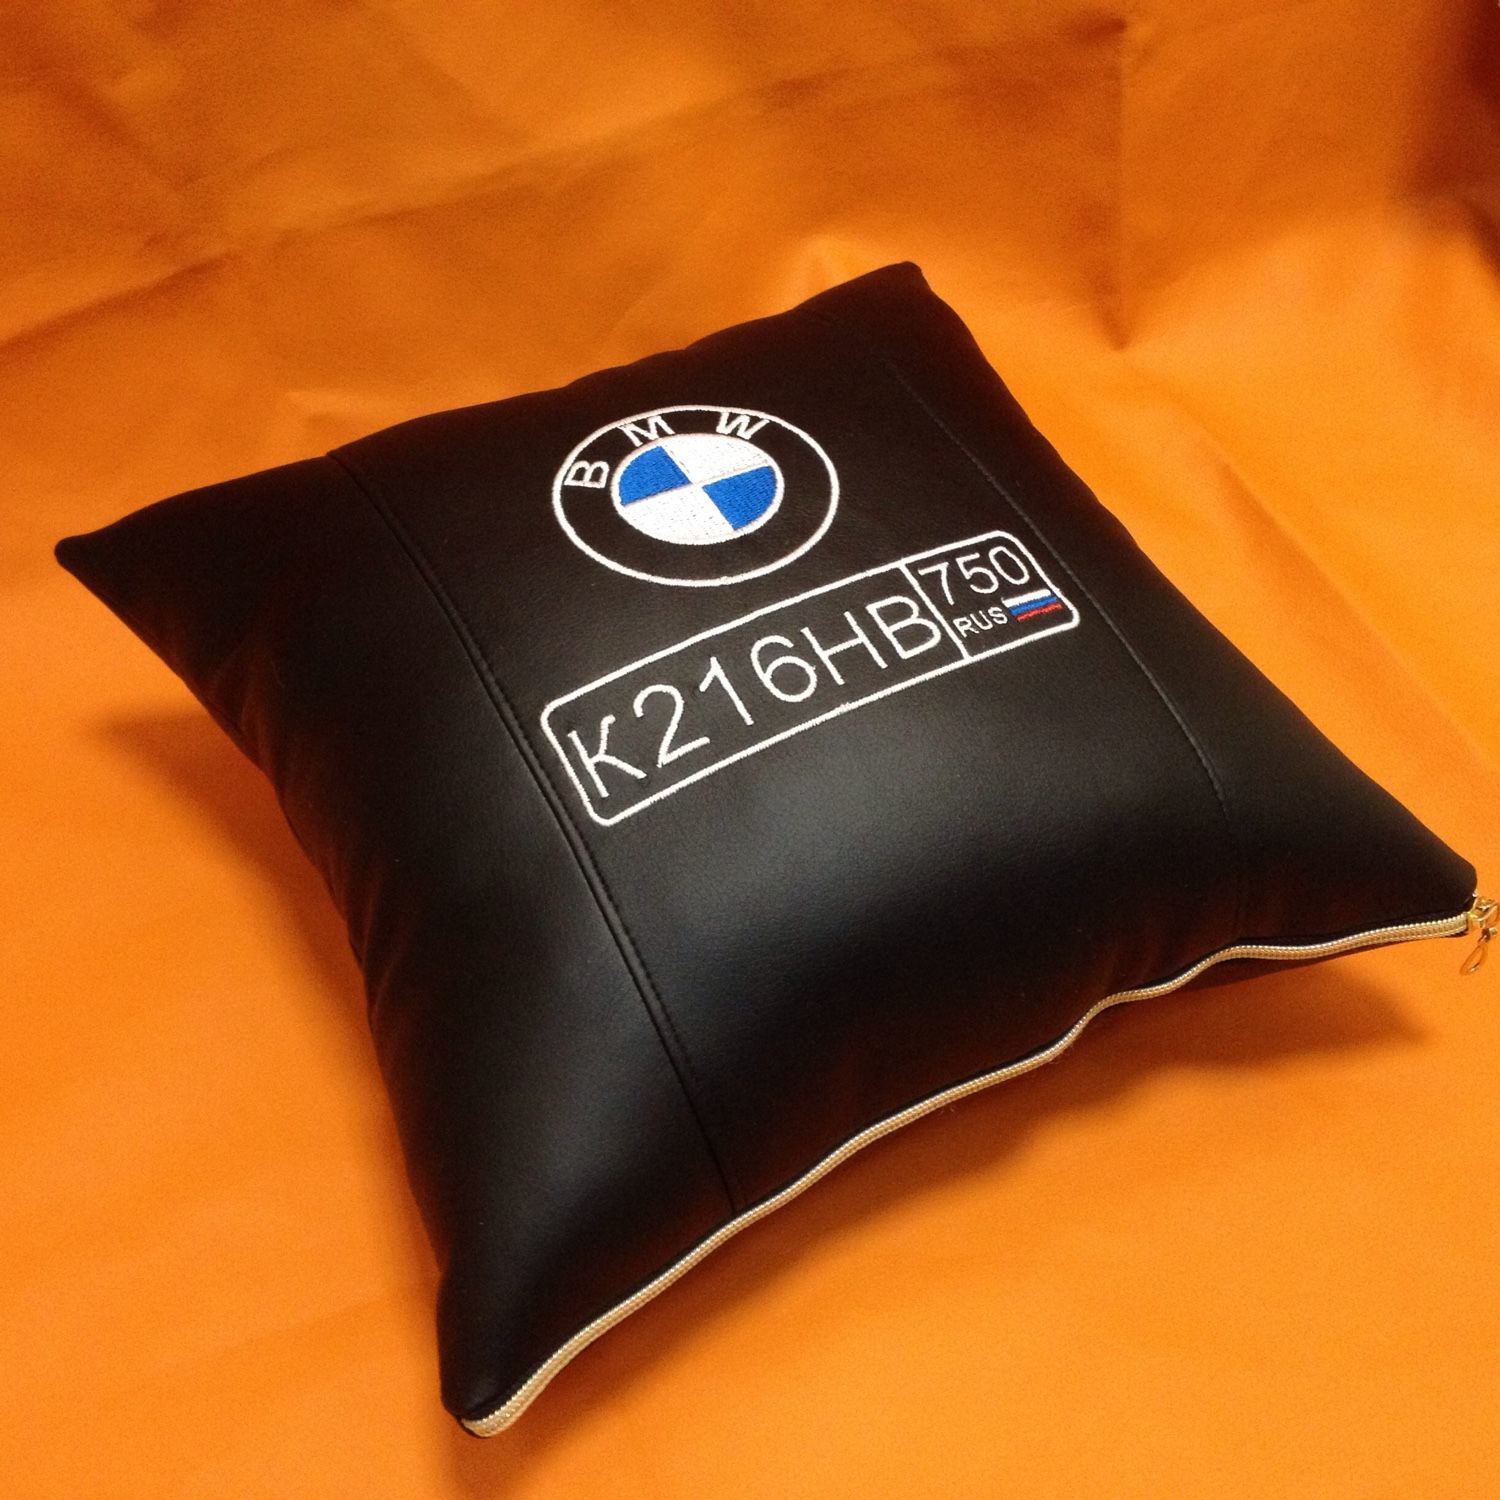 Купить подушки бмв. Подушка в машину. Подушки кожаные для автомобиля. Подушка в машину с логотипом. Подушки в автомобиль с логотипом BMW.